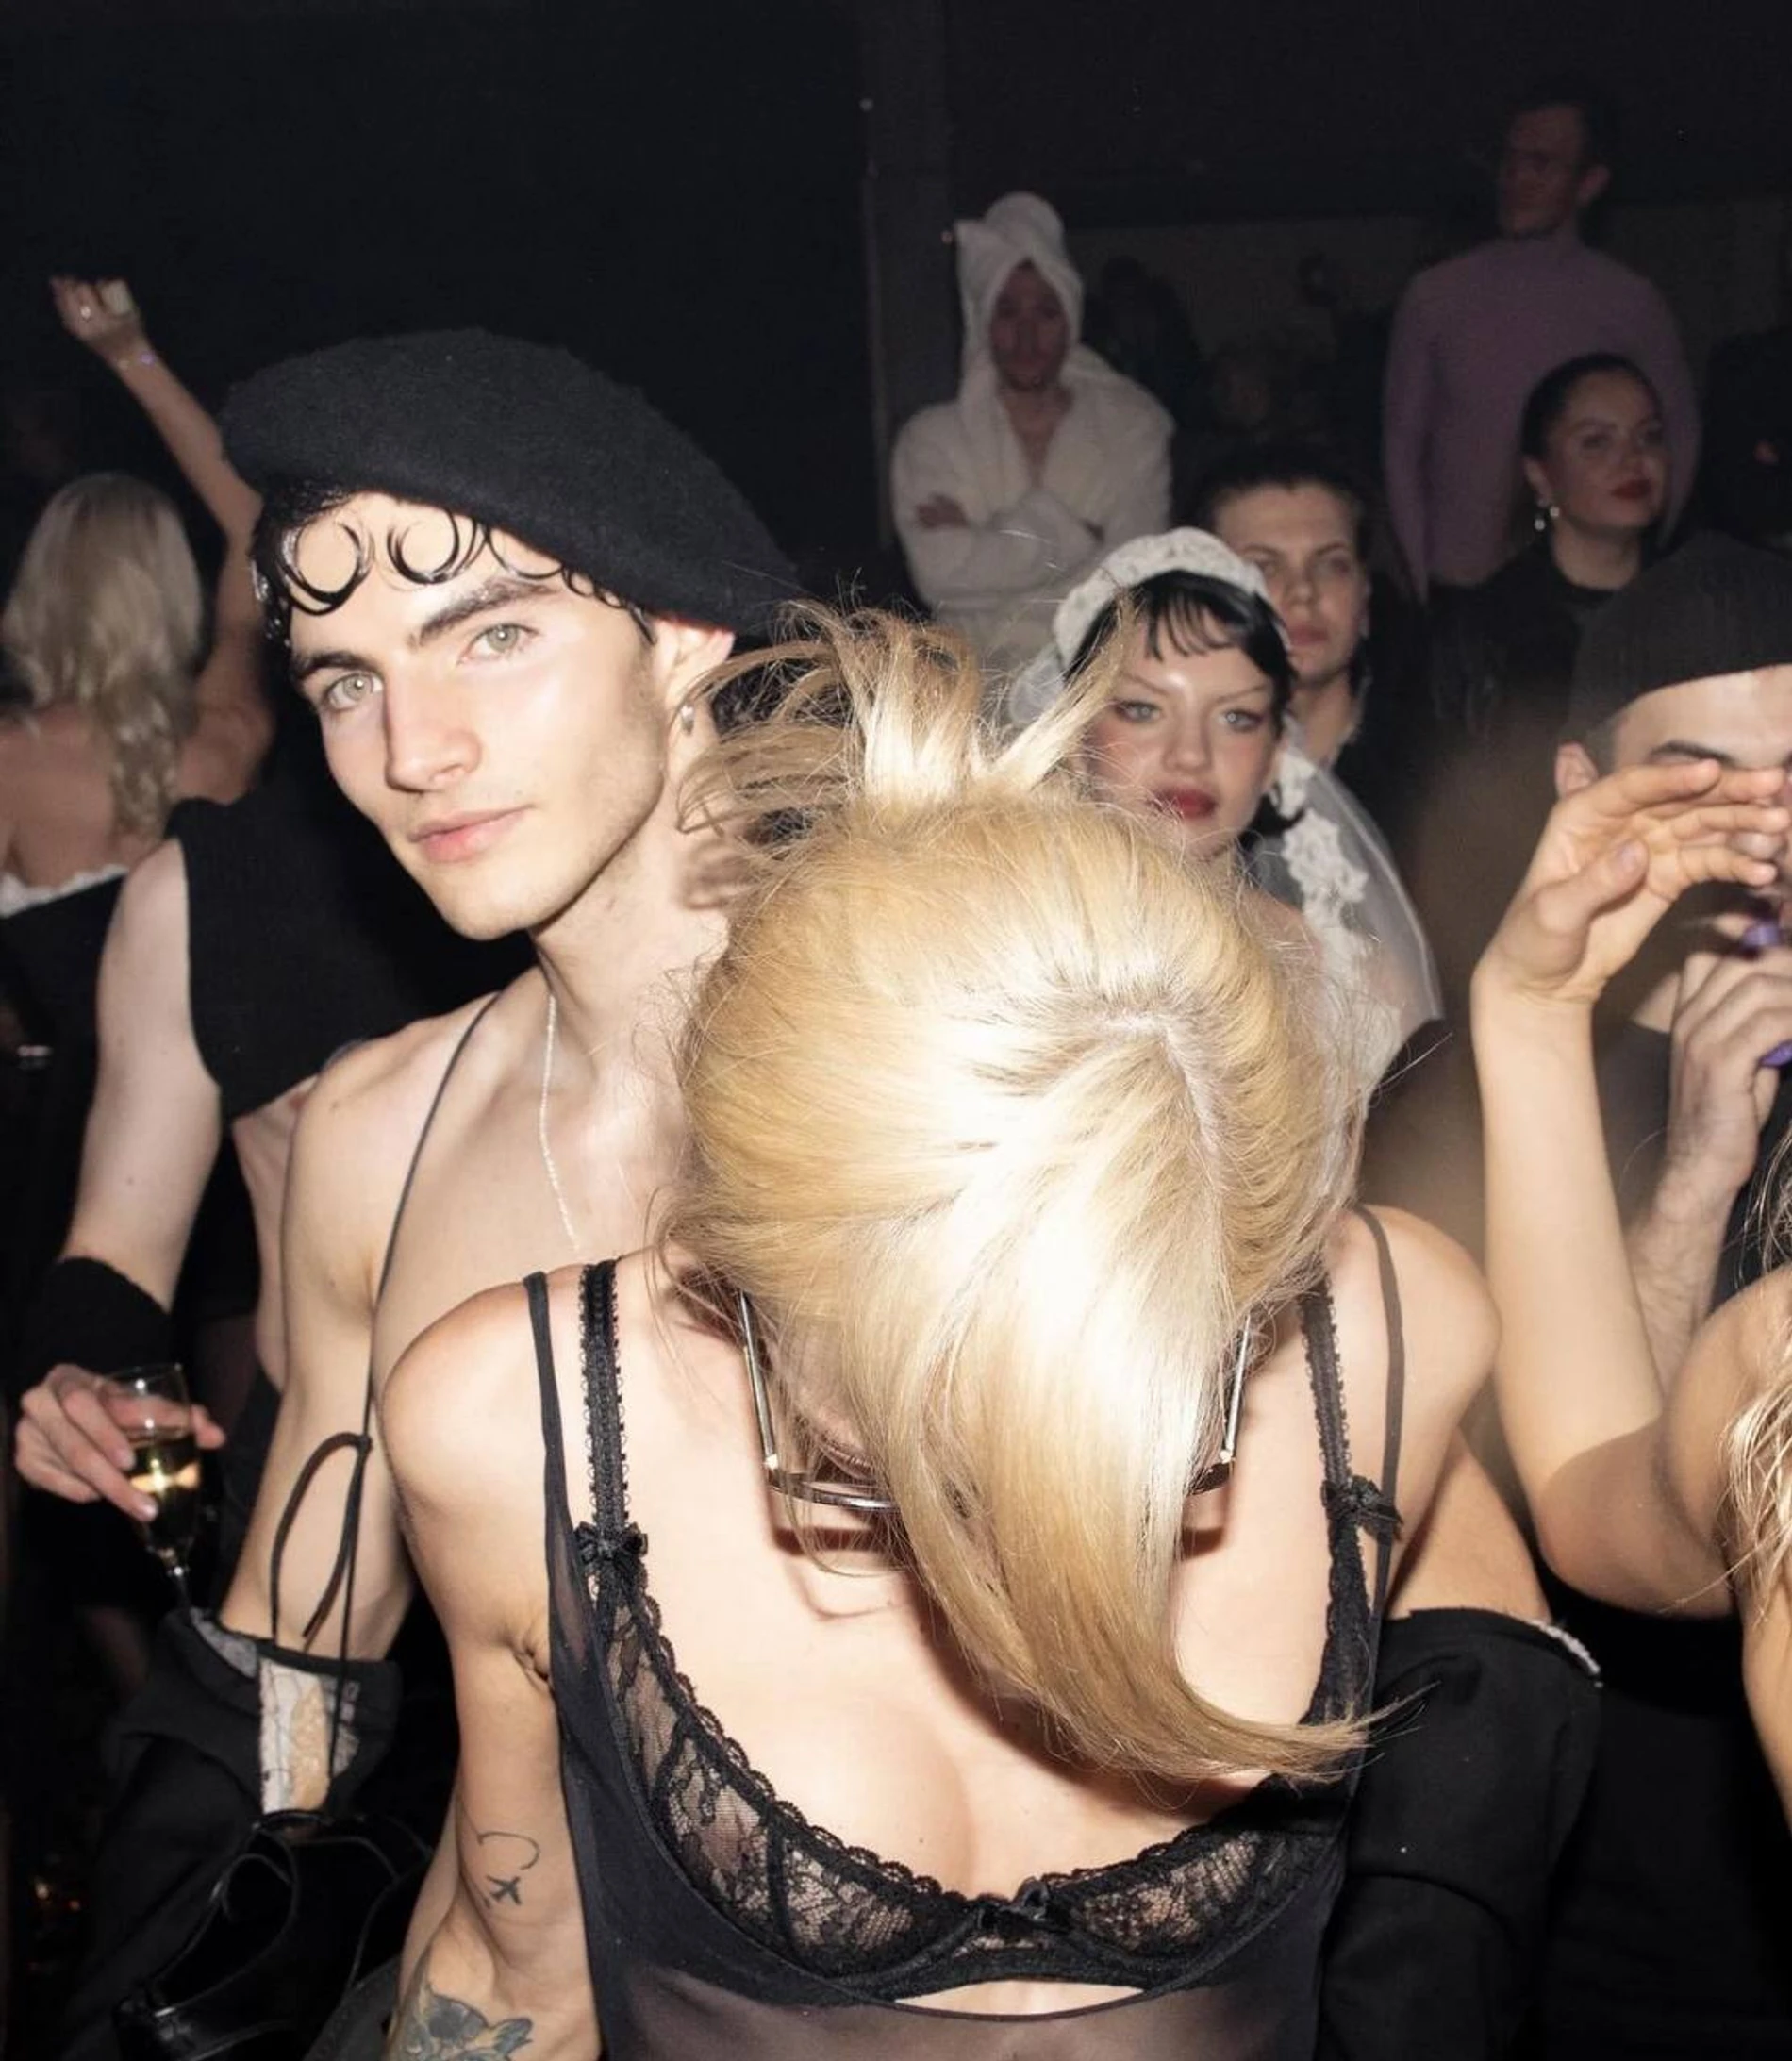 Голые девушки в сперме после вечеринки - видео с архива сайта chelmass.ru